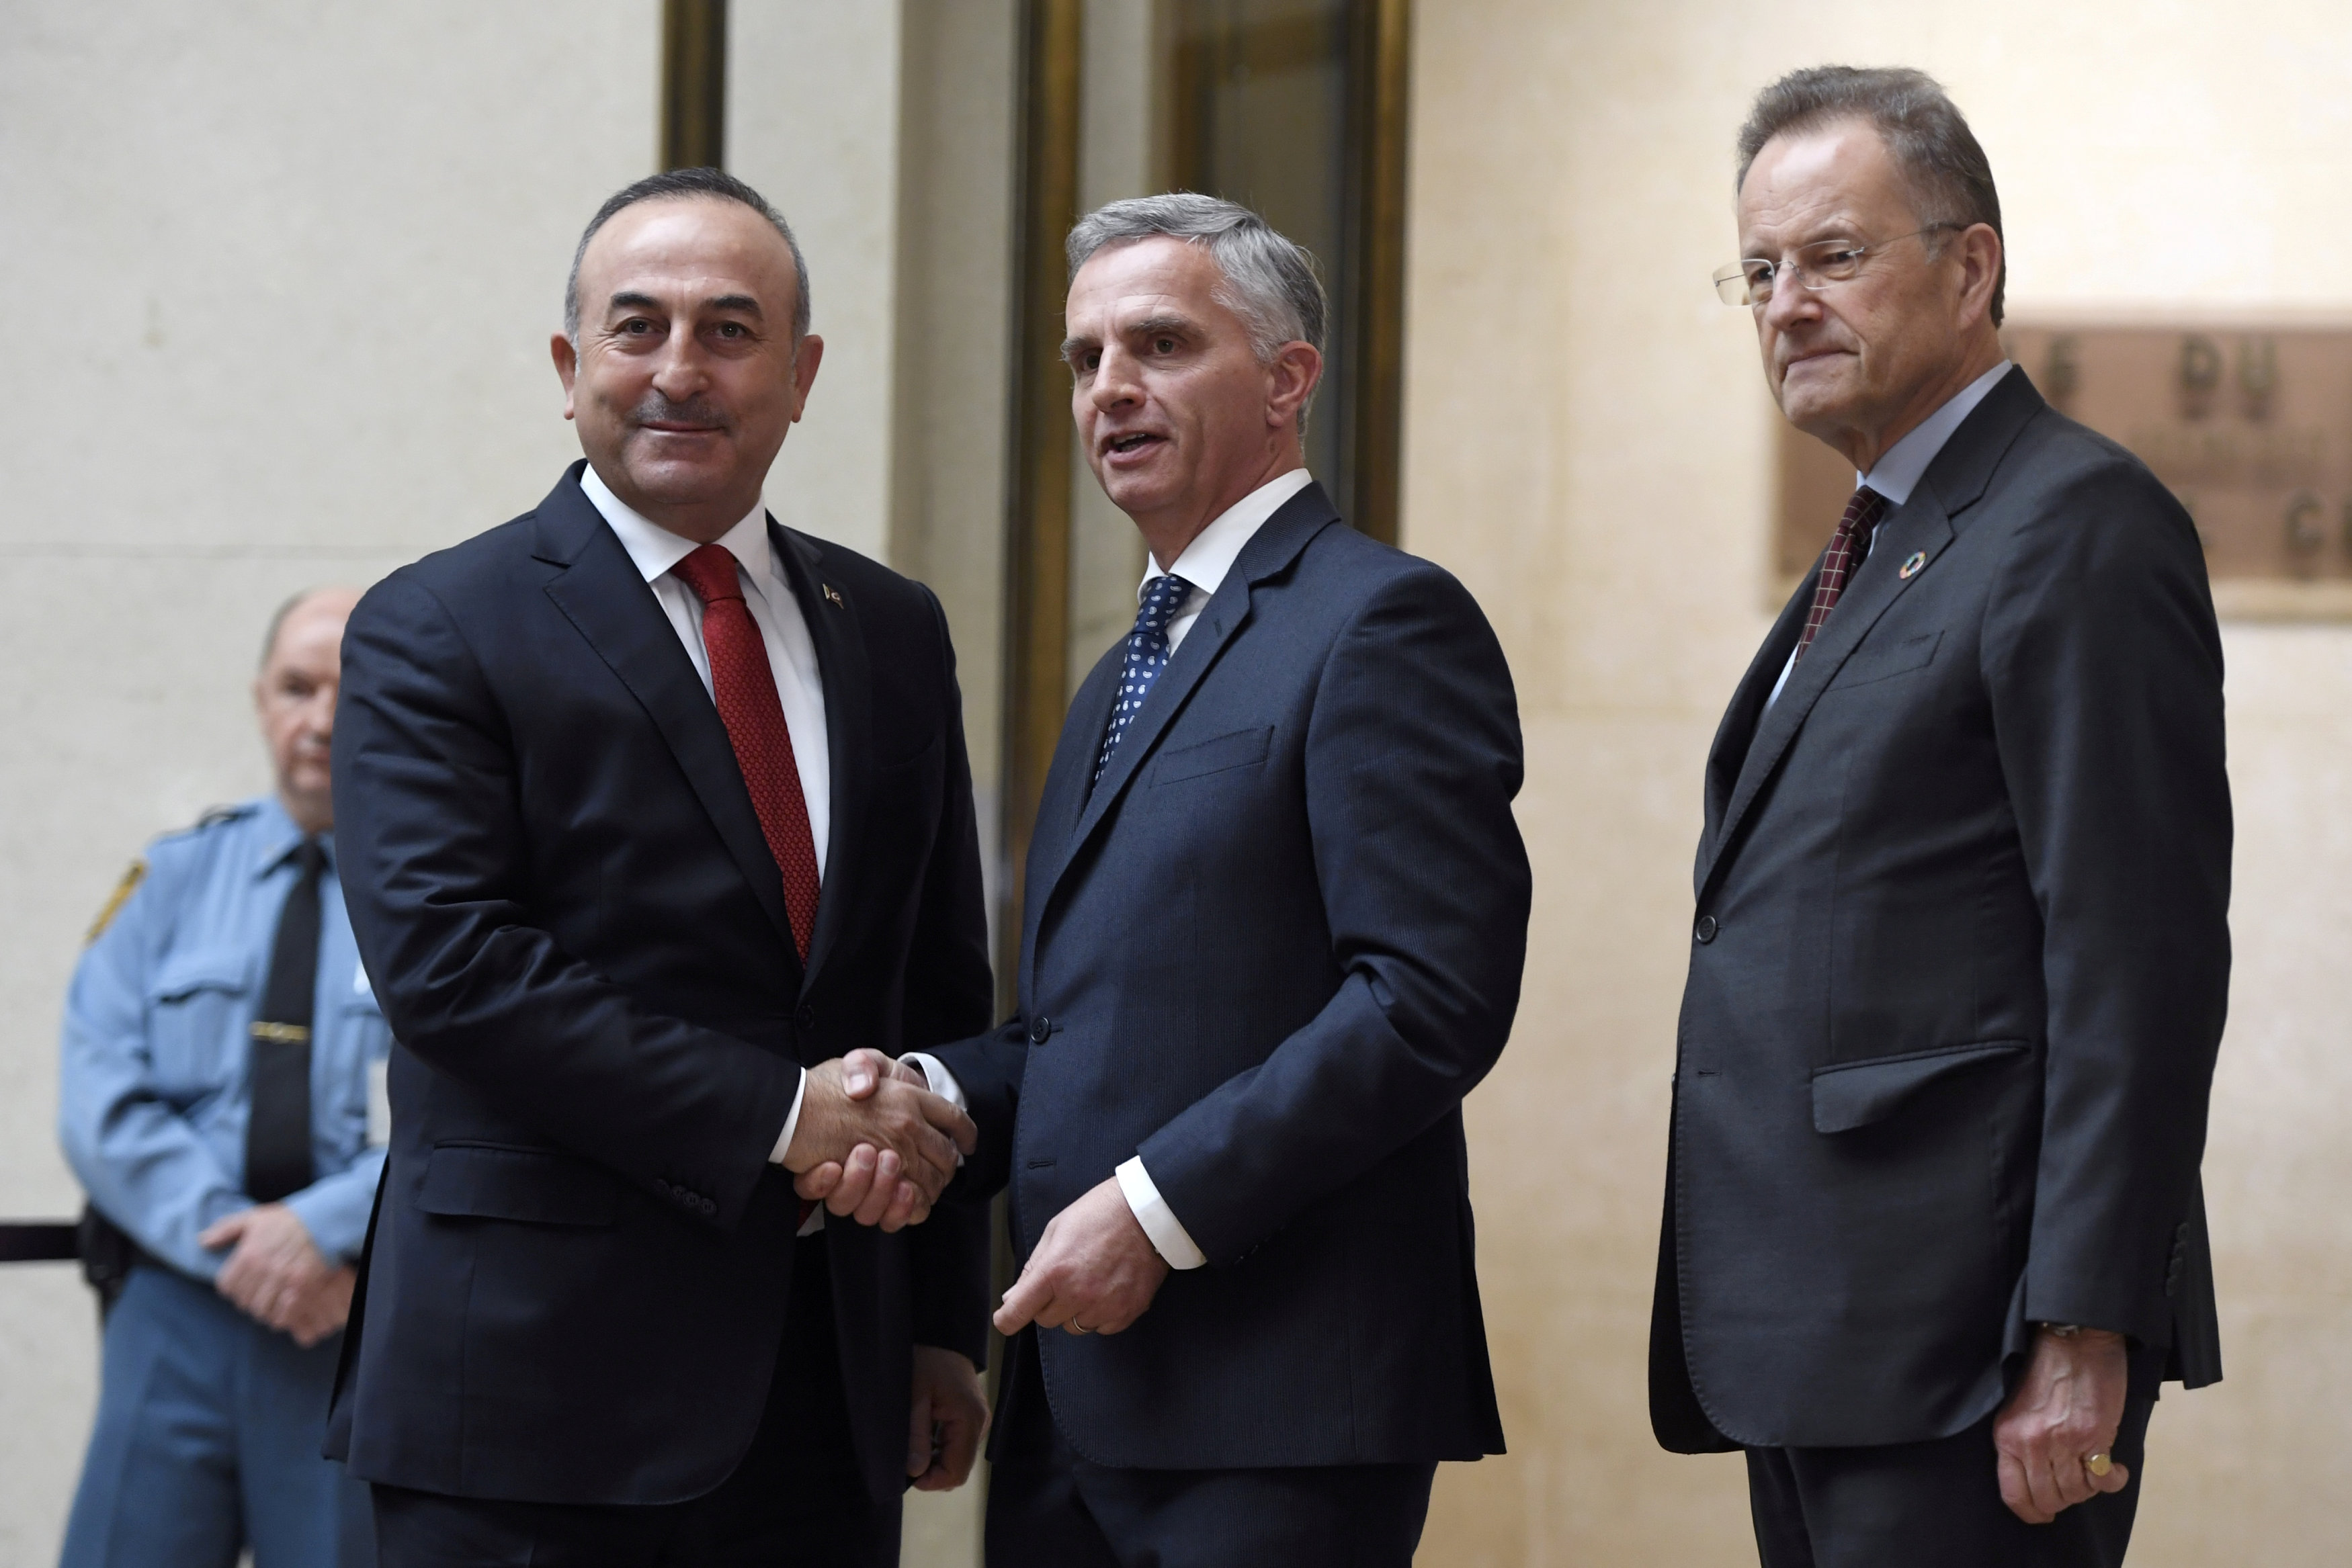 وزير الخارجية التركى يصافح وزير الخارجية السويسرى قبل مؤتمر توحيد قبرص فى جنيف